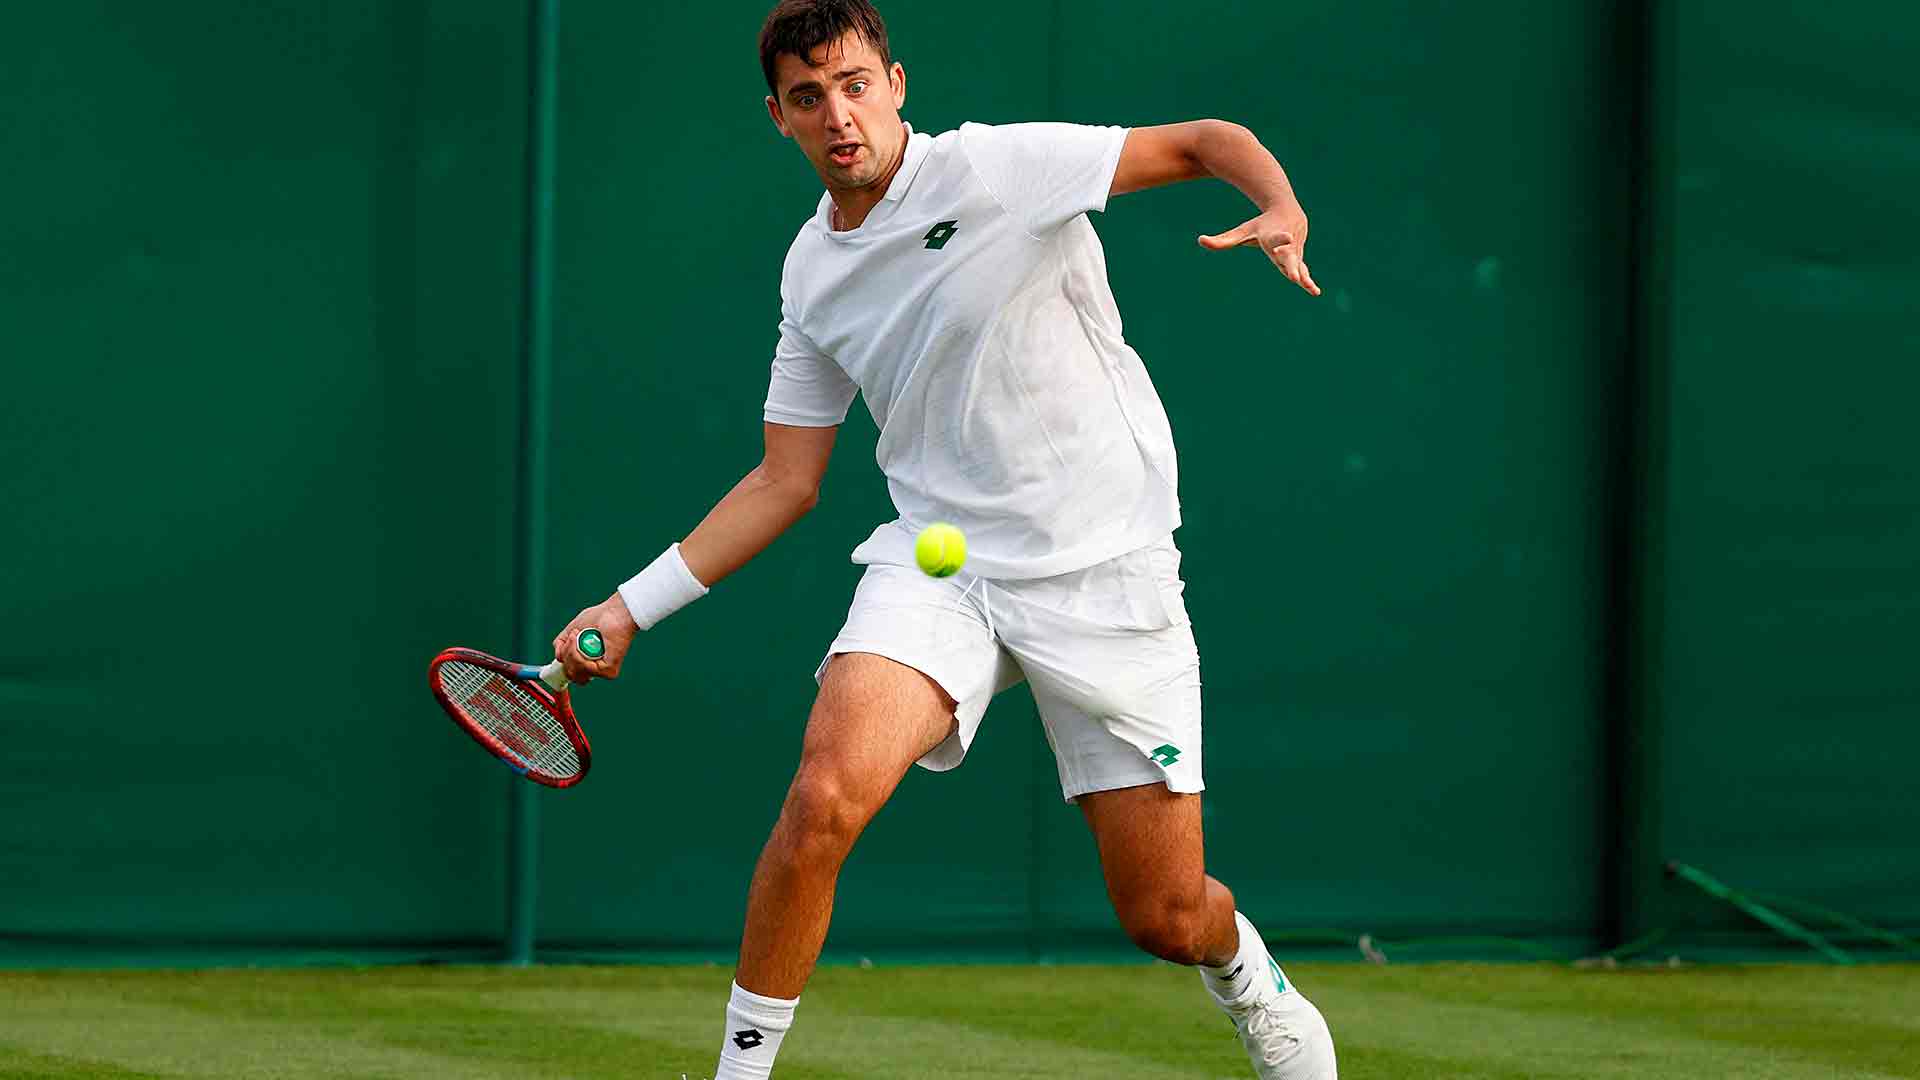 Tomás Barrios Vera participó por primera vez en el cuadro principal de Wimbledon en 2021.